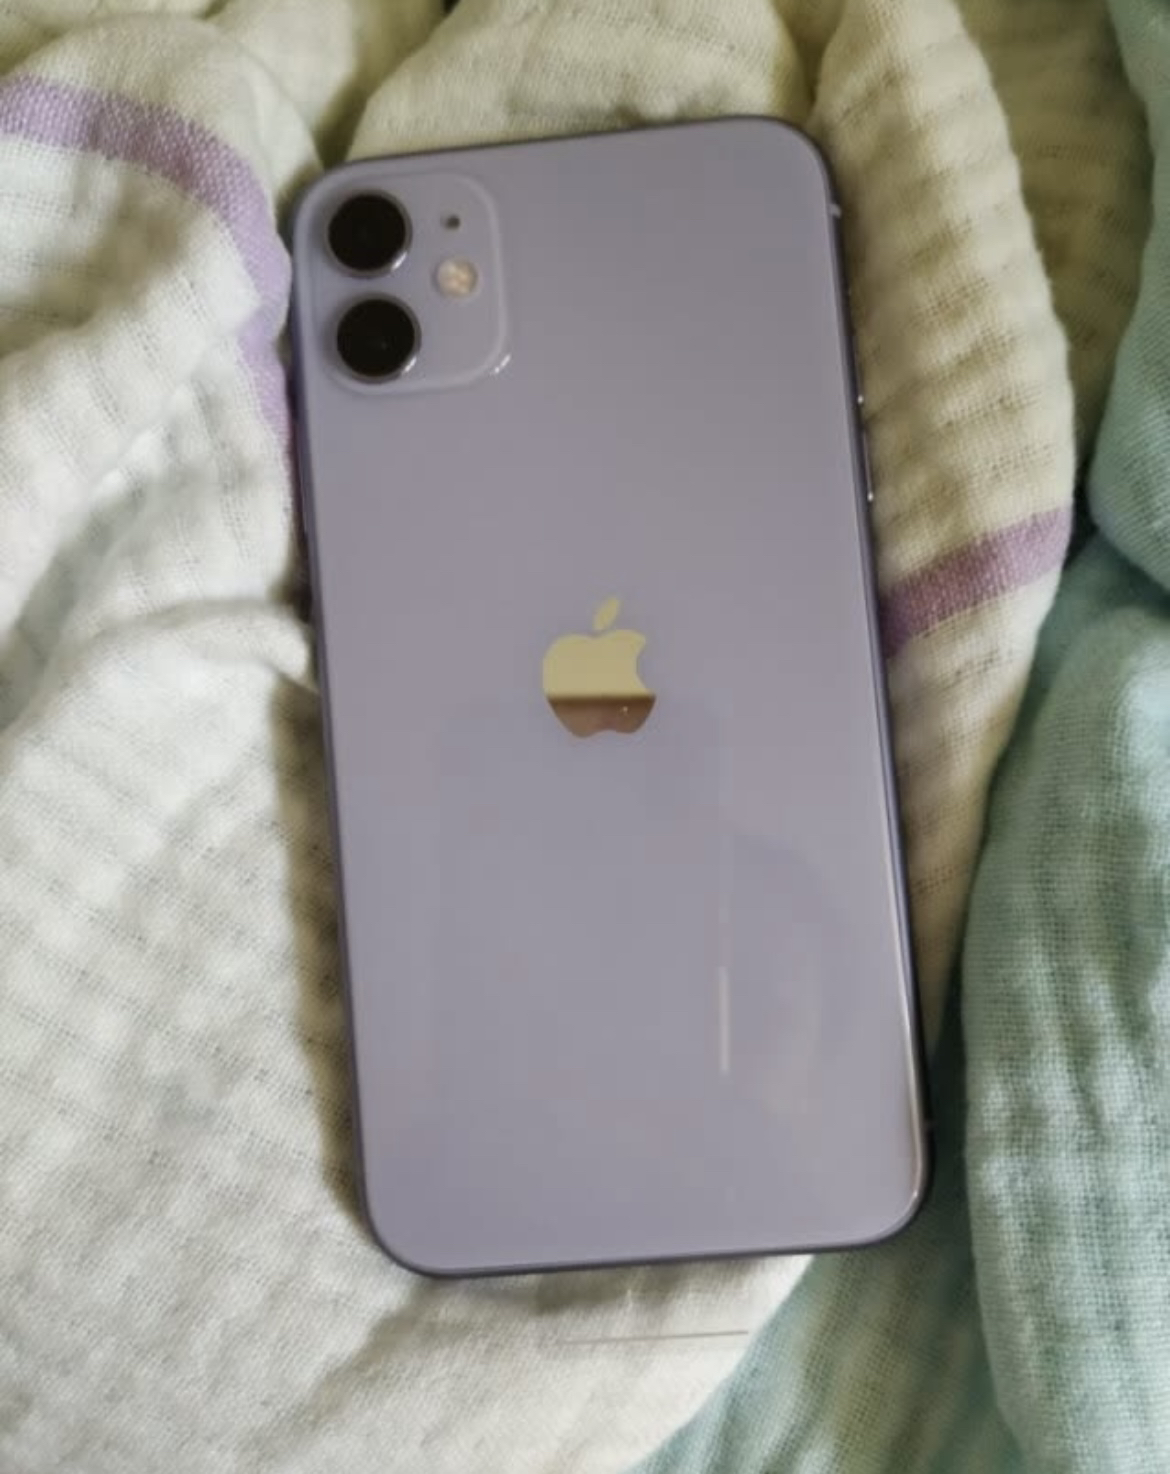 apple 苹果手机 iphone 11 新包装 紫色 全网通 128g晒单图